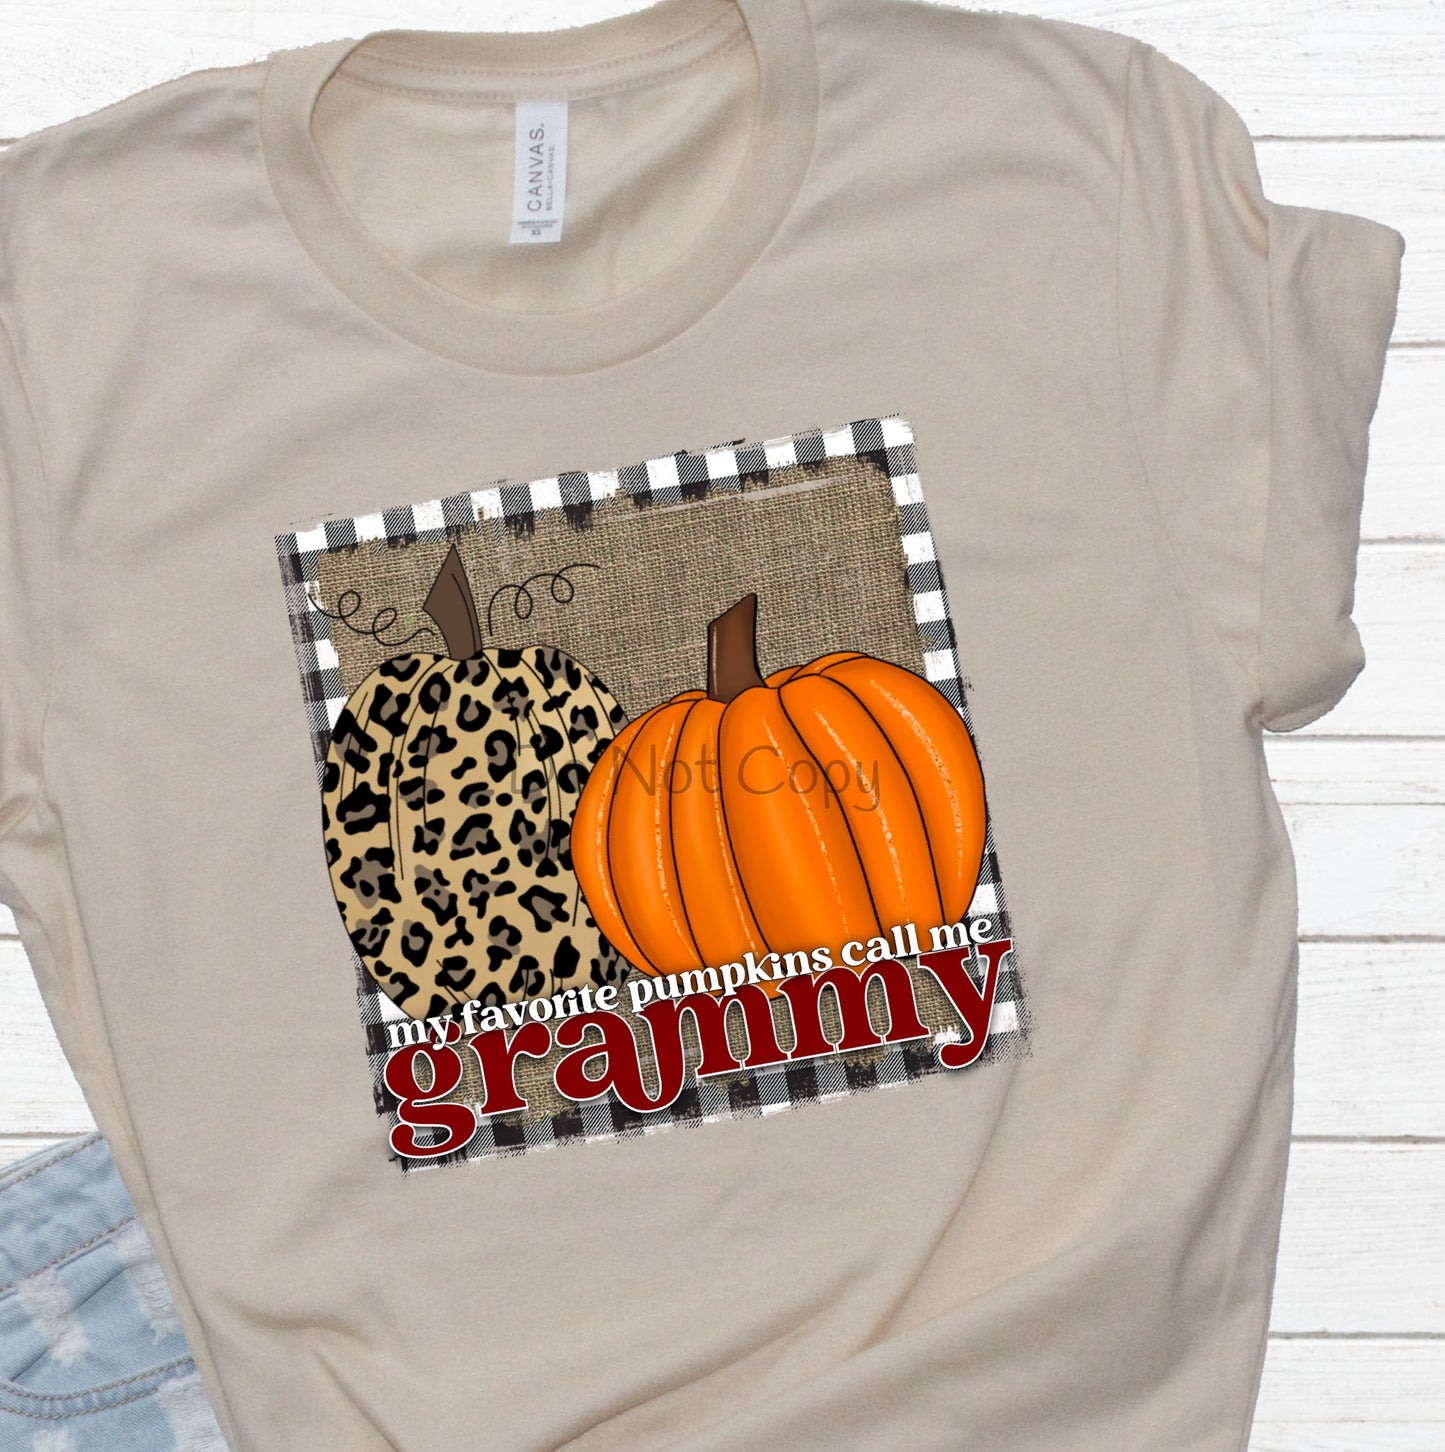 My favorite pumpkins call me Grammy leopard pumpkin frame -DTF